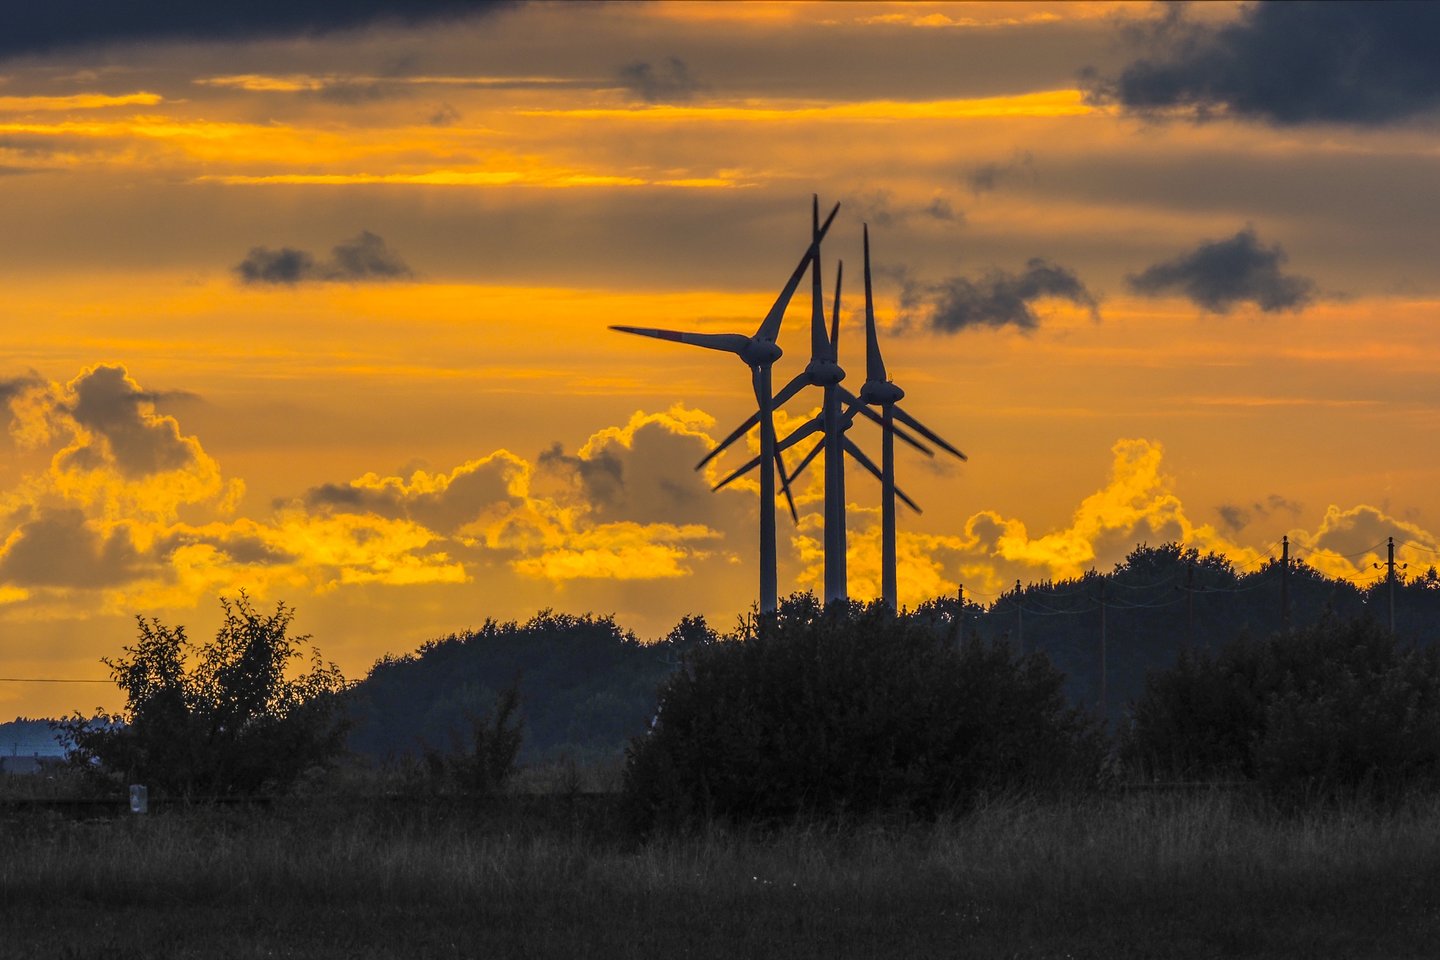   Abu scenarijus savo leidinyje apie vėjo energetiką ir Europos energetikos sistemos elektrifikaciją apibrėžė vėjo energetikos organizacijas vienijanti asociacija „Wind Europe“.<br>V.Ščiavinsko nuotr.